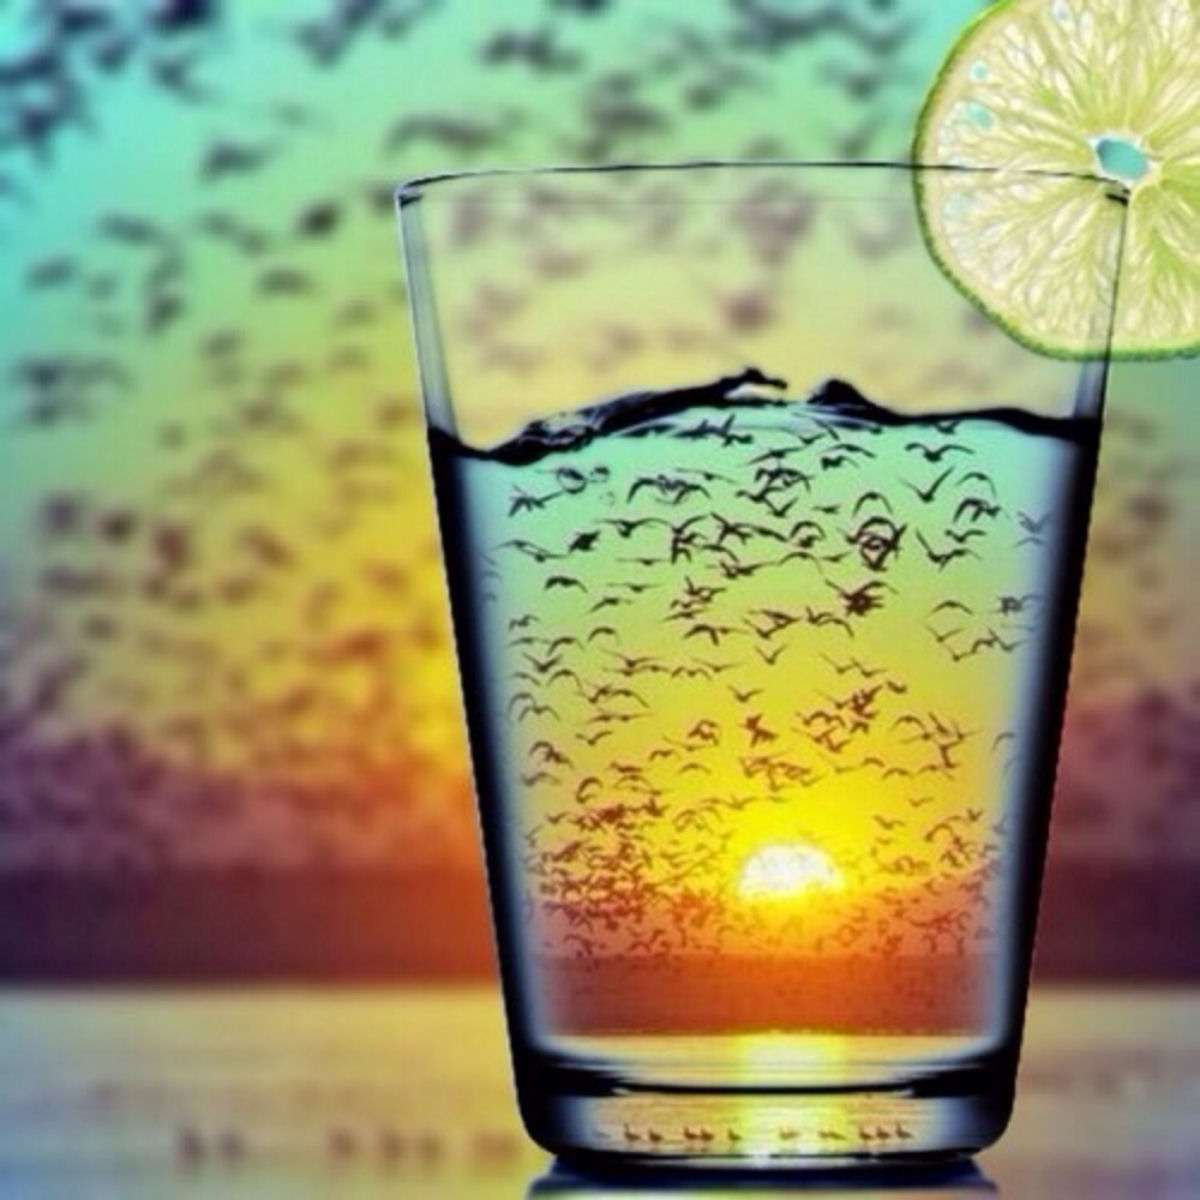 Pássaros e pôr do sol através de um copo.